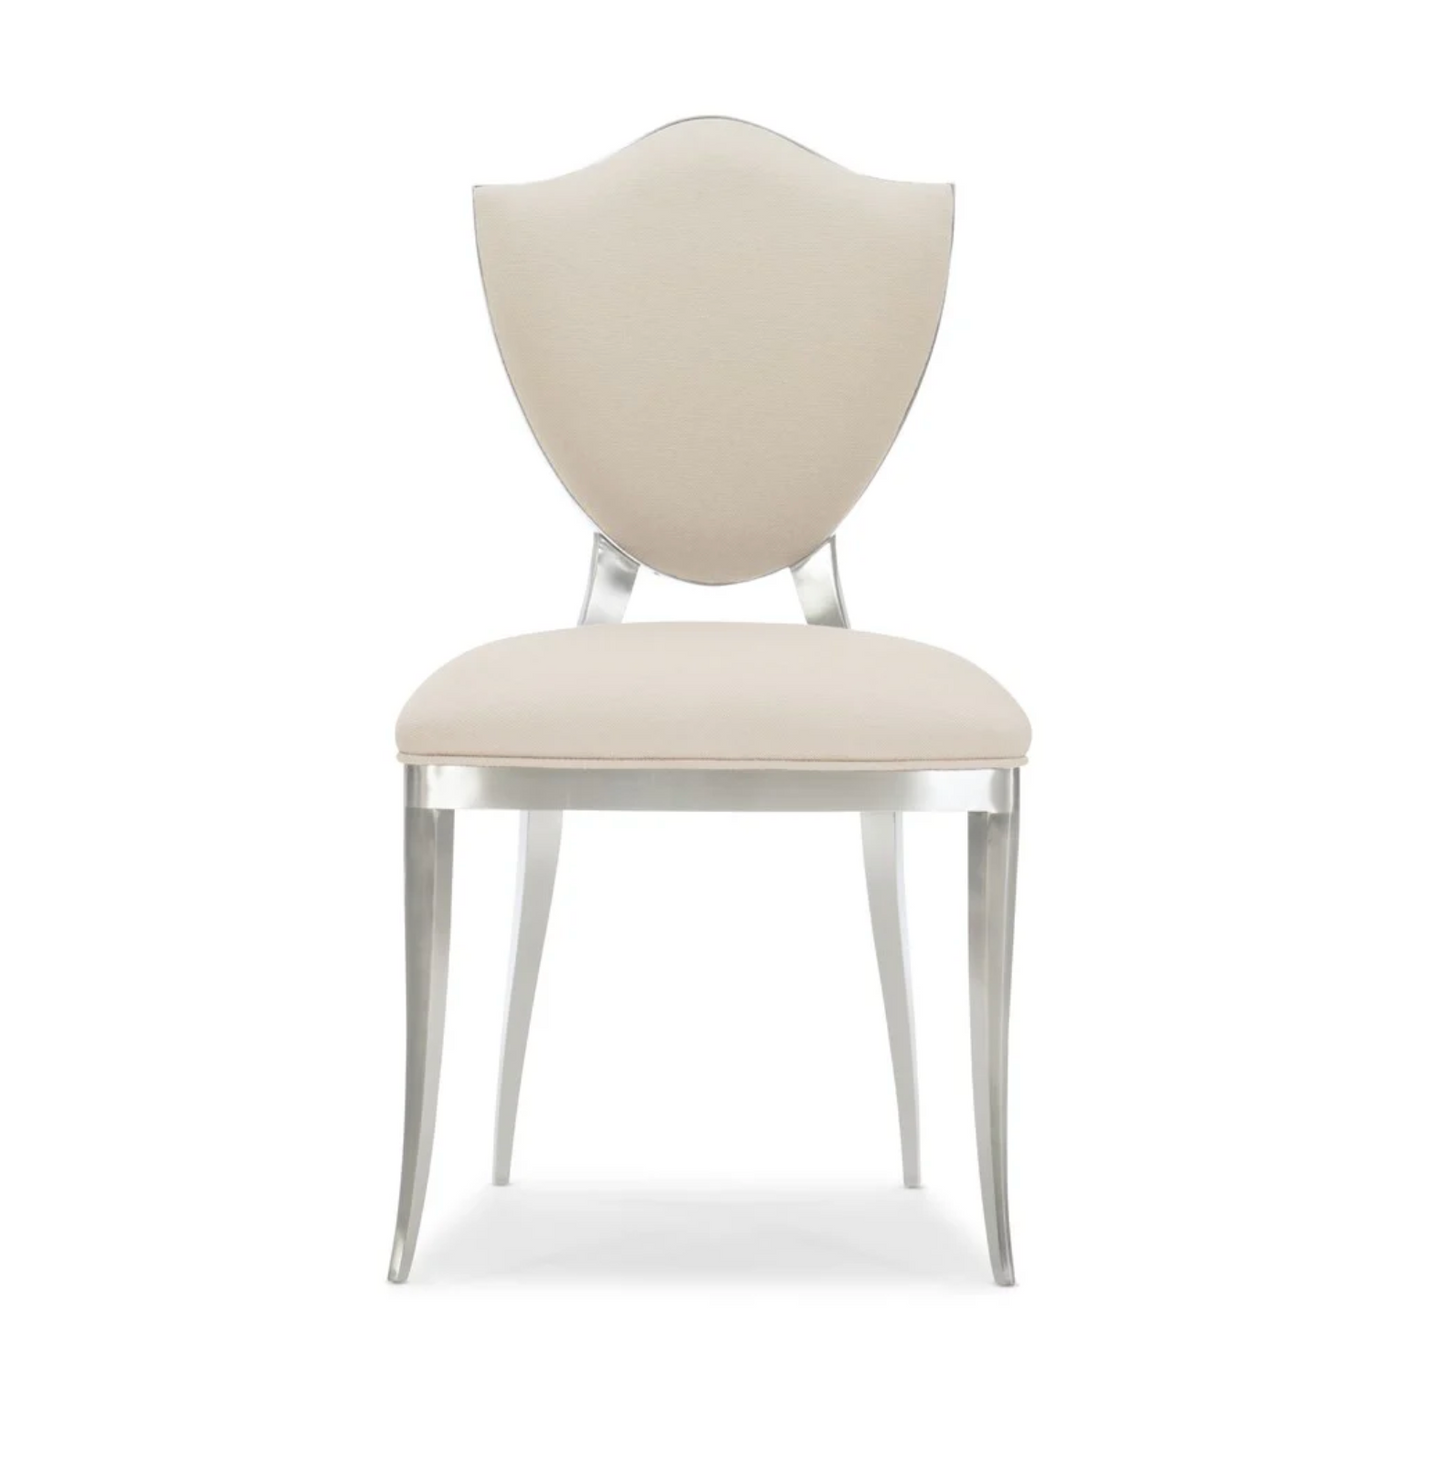 Carocole Chair